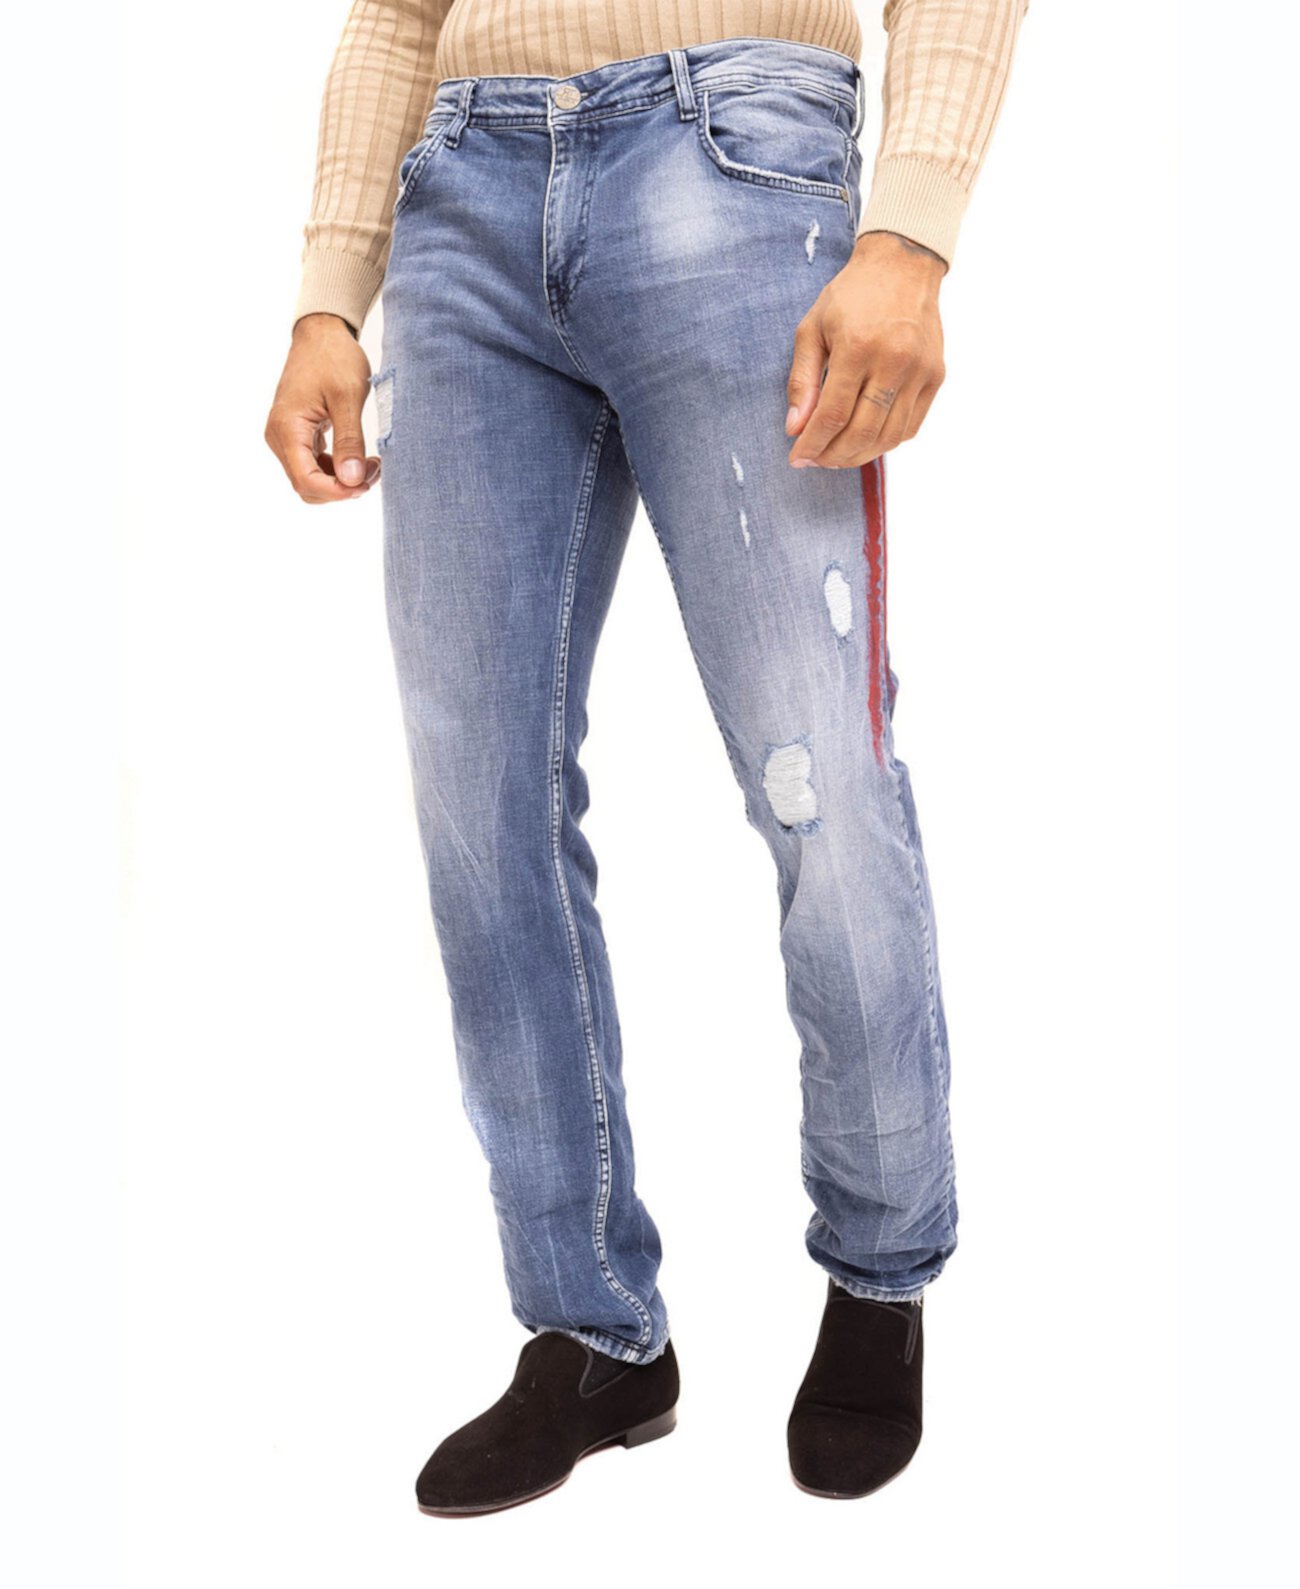 Мужские джинсы Modern в полоску из денима RON TOMSON